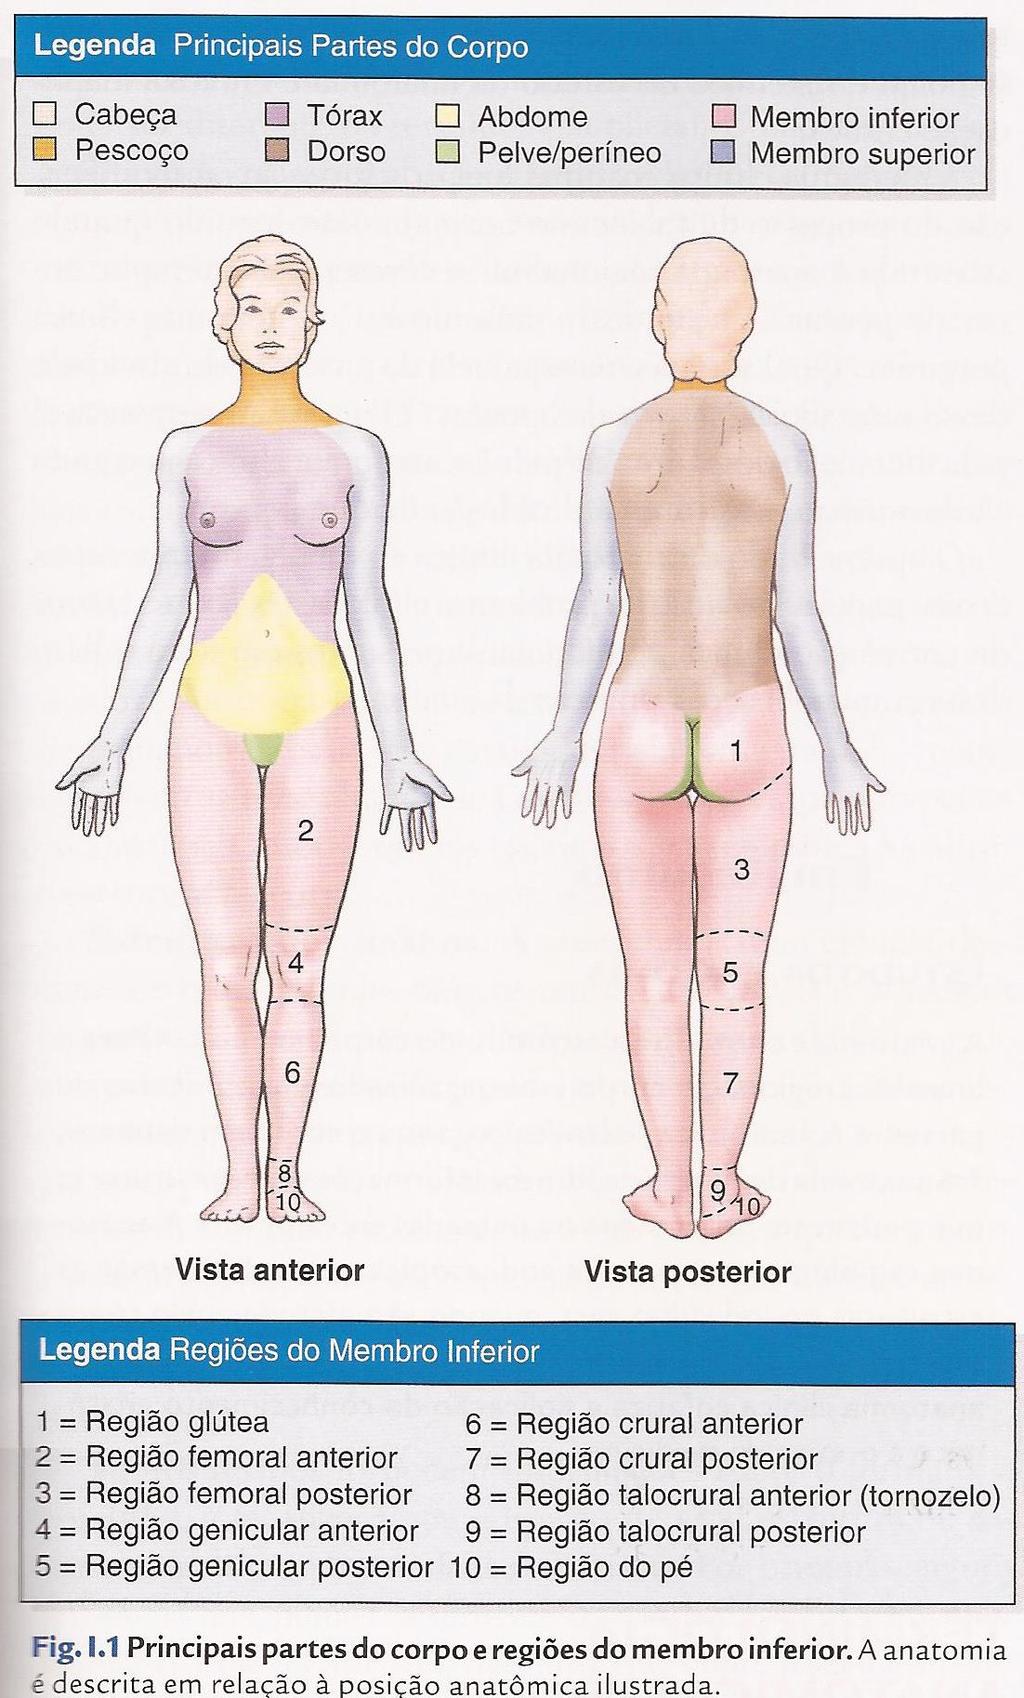 -Anatomia regional (anatomia topográfica) compreende a organização do corpo humano em partes principais ou segmentos: Corpo básico = cabeça + pescoço + tronco (tórax, abdome, dorso e pelve/períneo) +